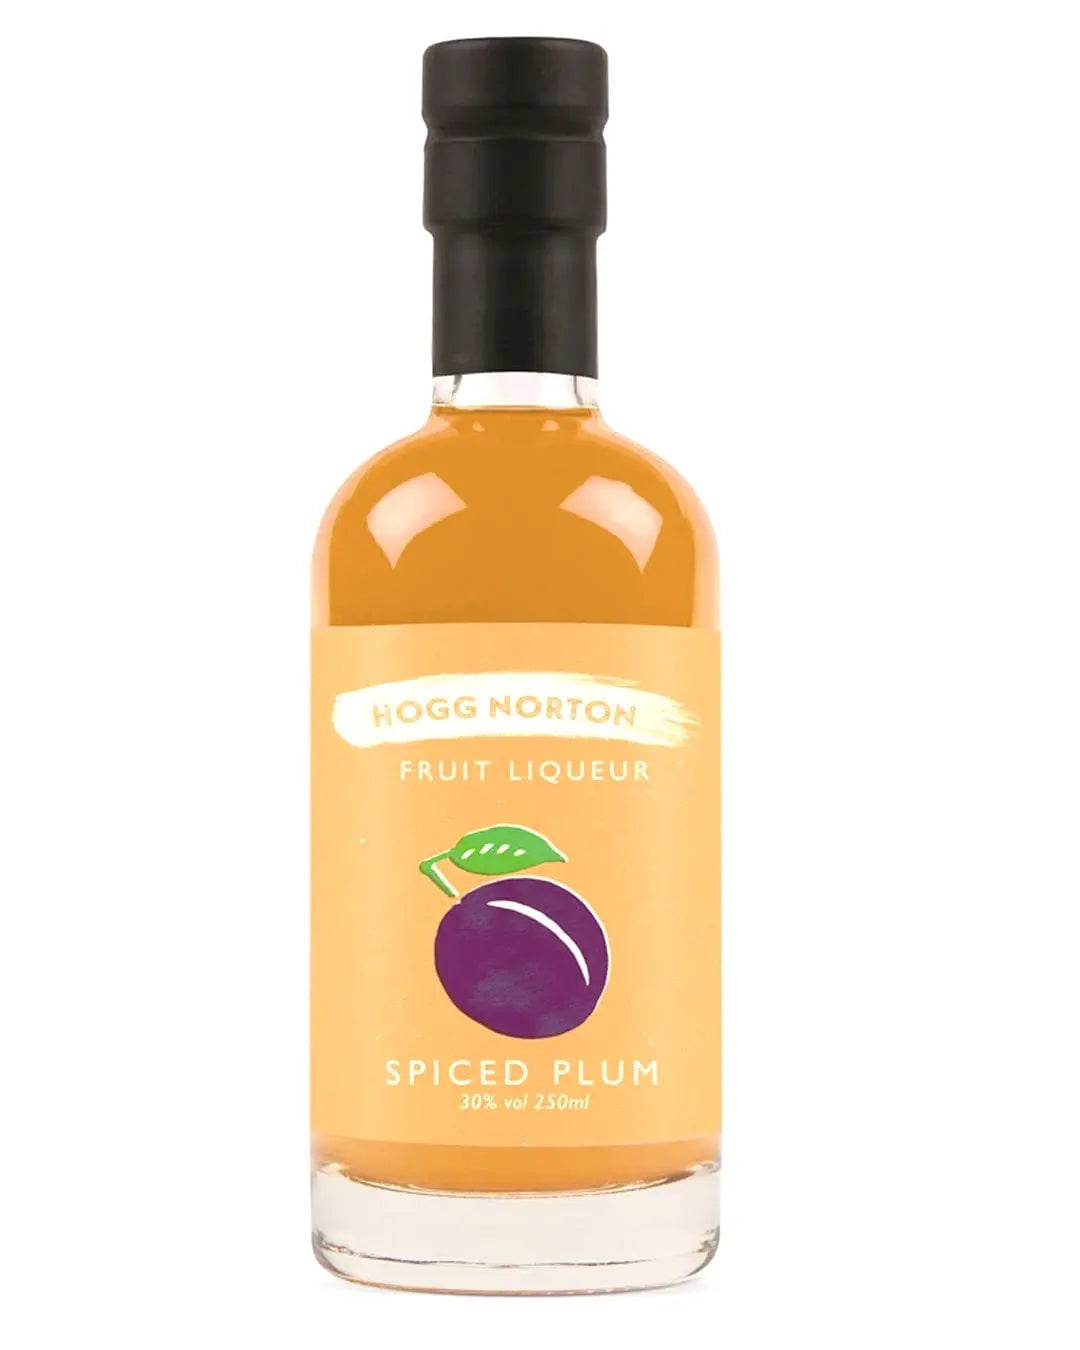 Hogg Norton Spiced Plum Fruit Liqueur, 25 cl Liqueurs & Other Spirits